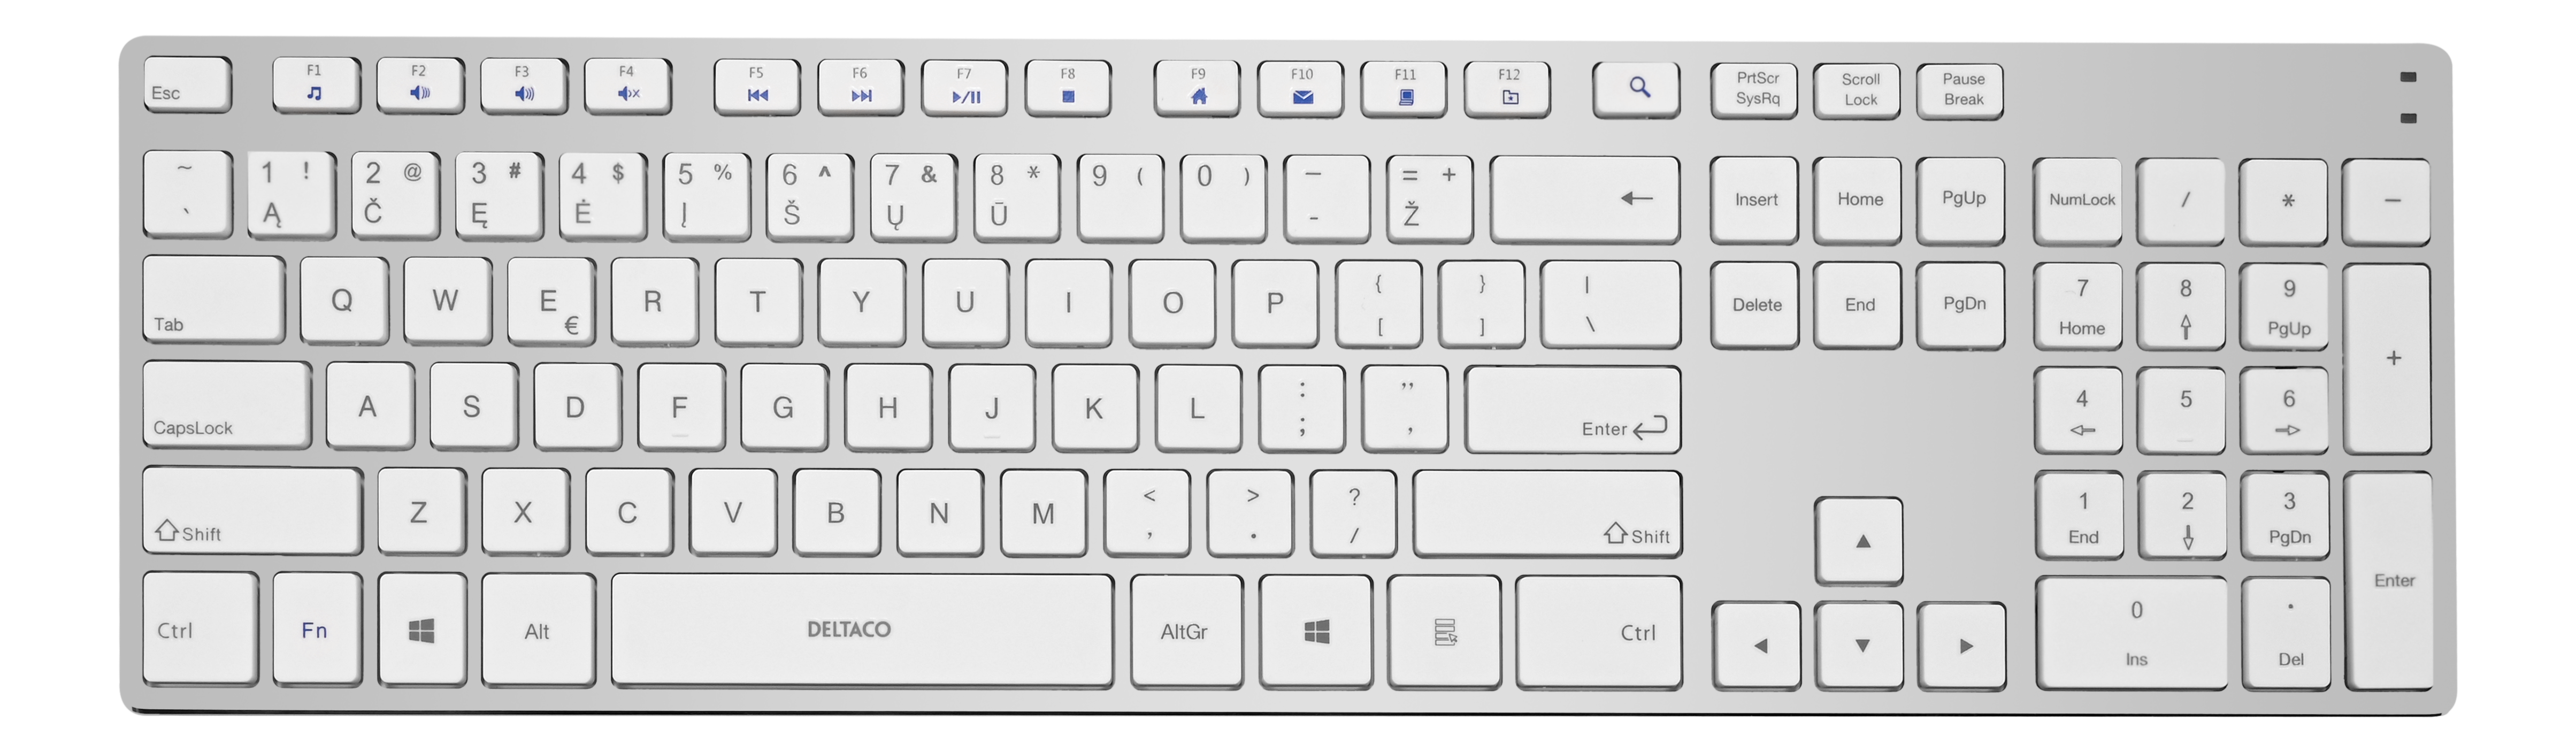 Bevielė plona klaviatūra DELTACO USB, LT, sidabrinė/balta / TB-802-W-LT